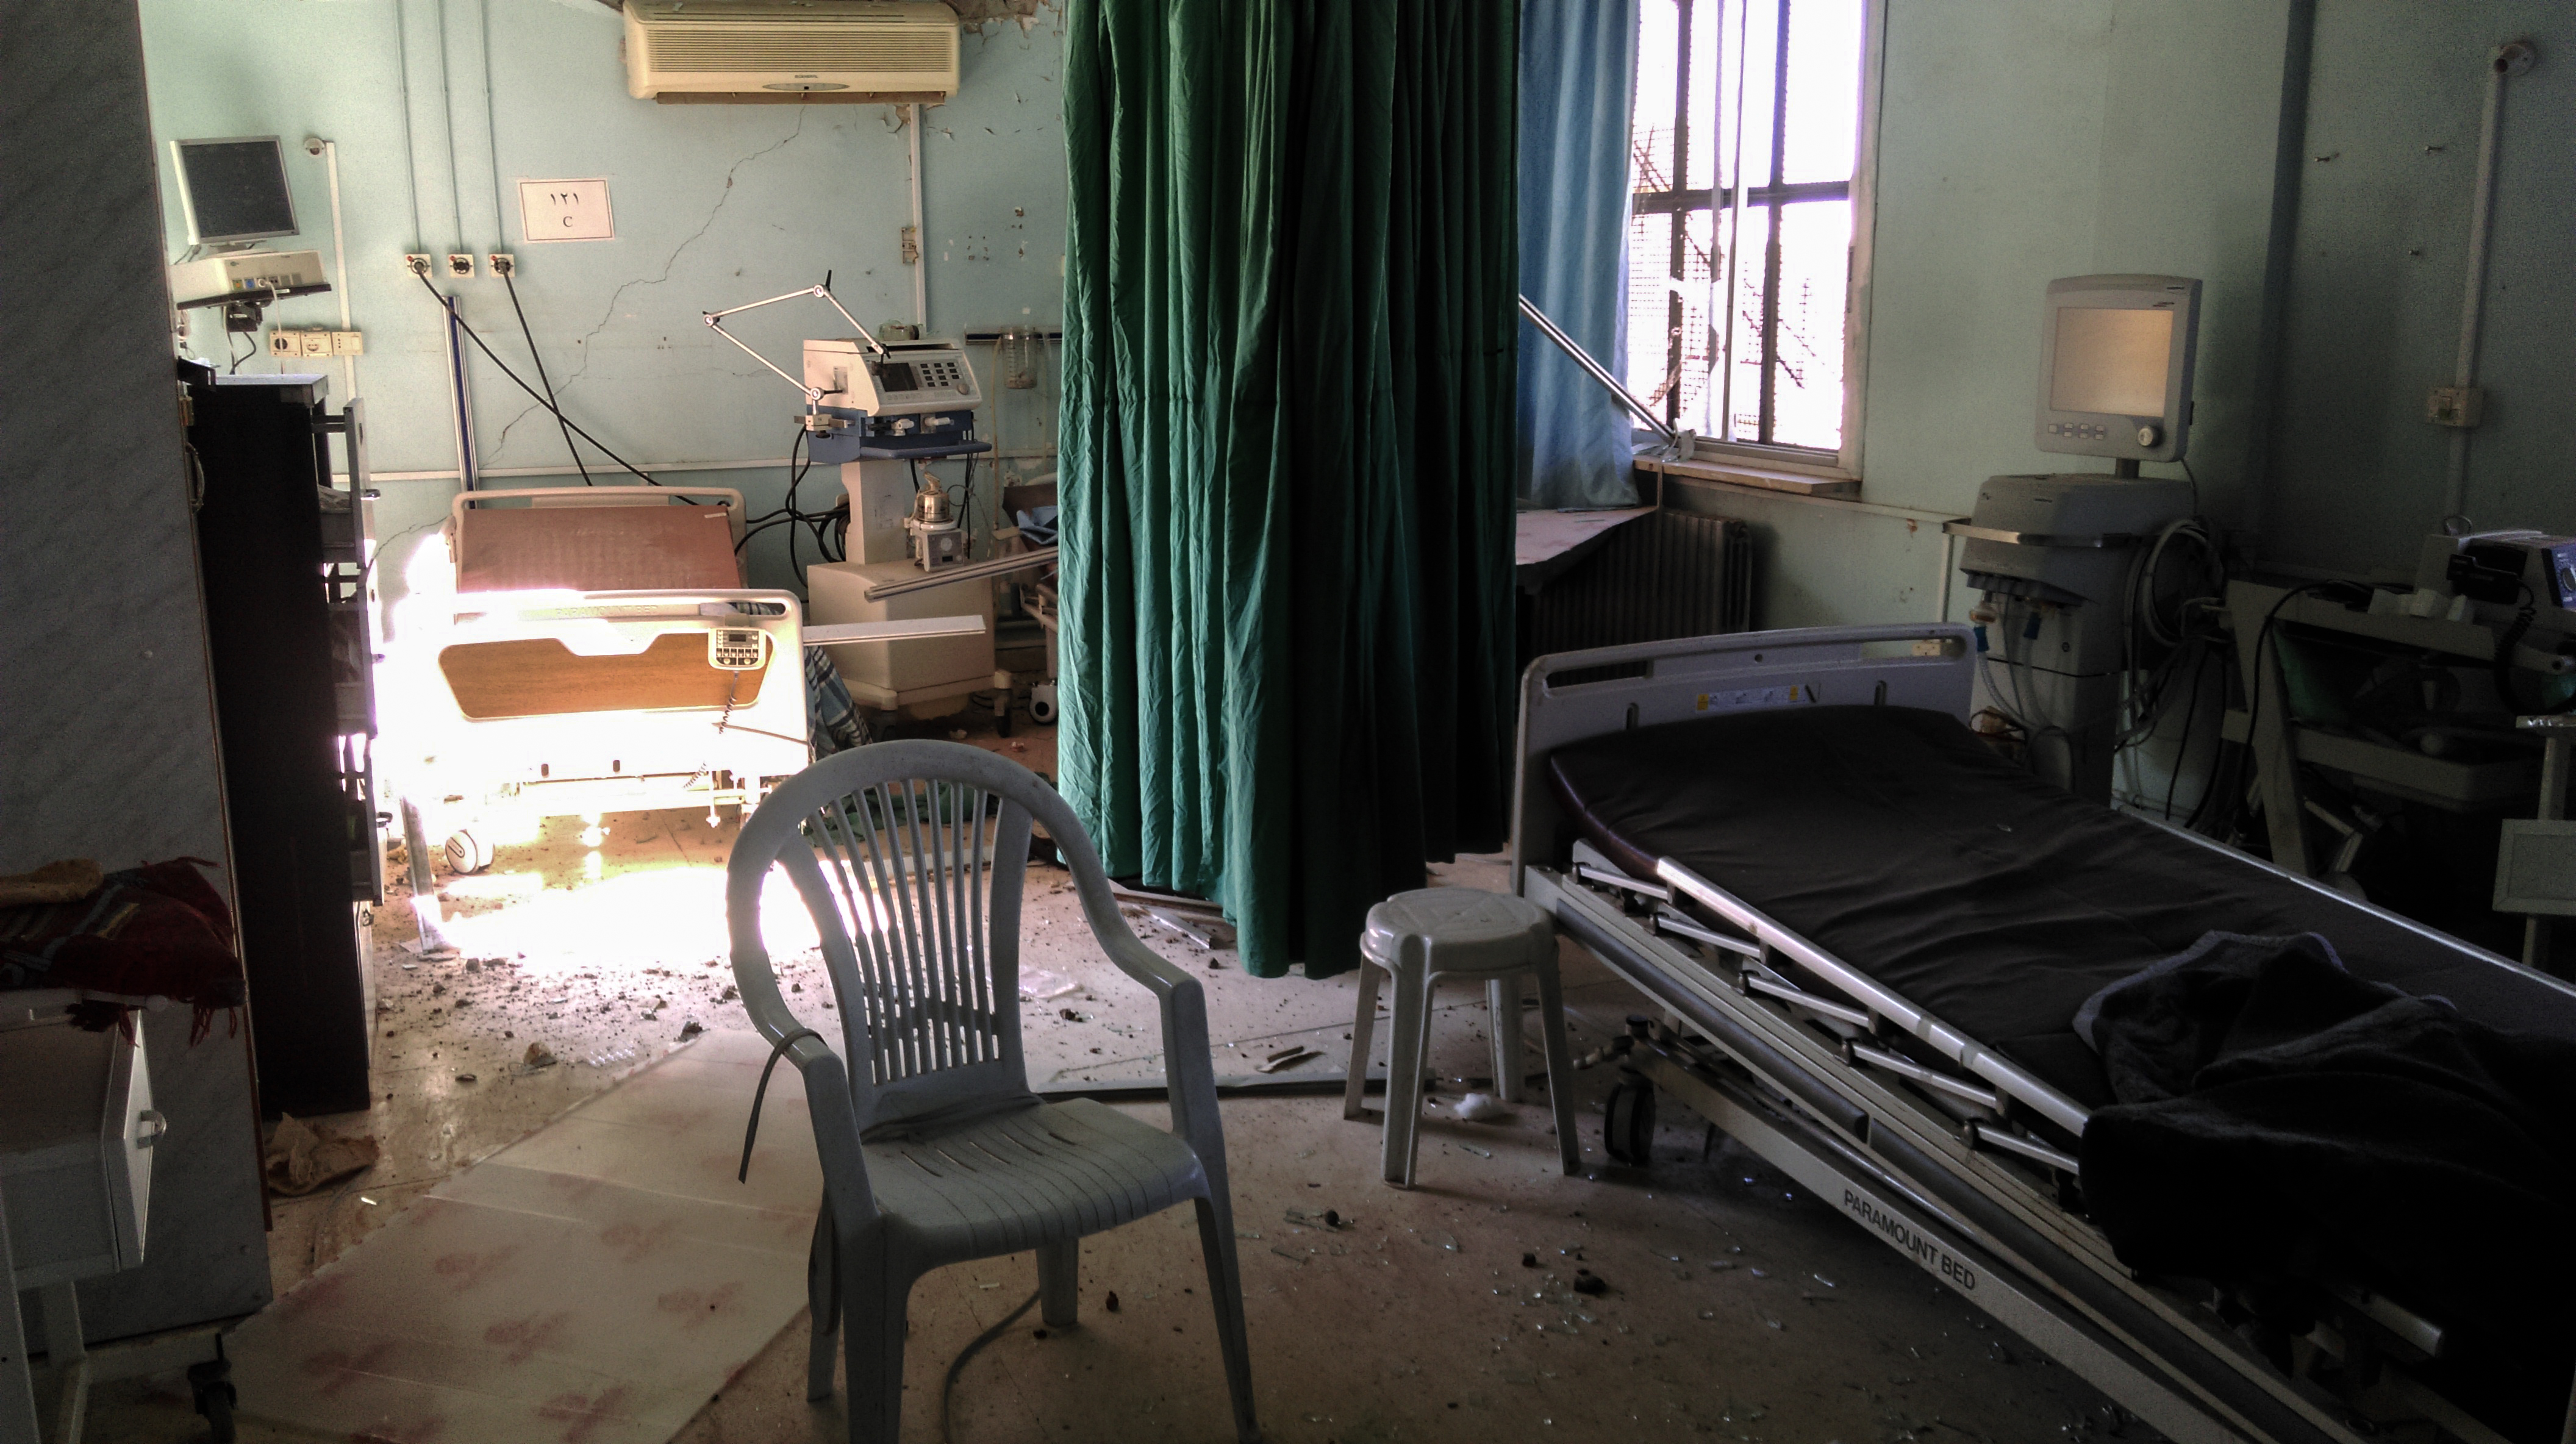 Busra ziekenhuis ©MSF